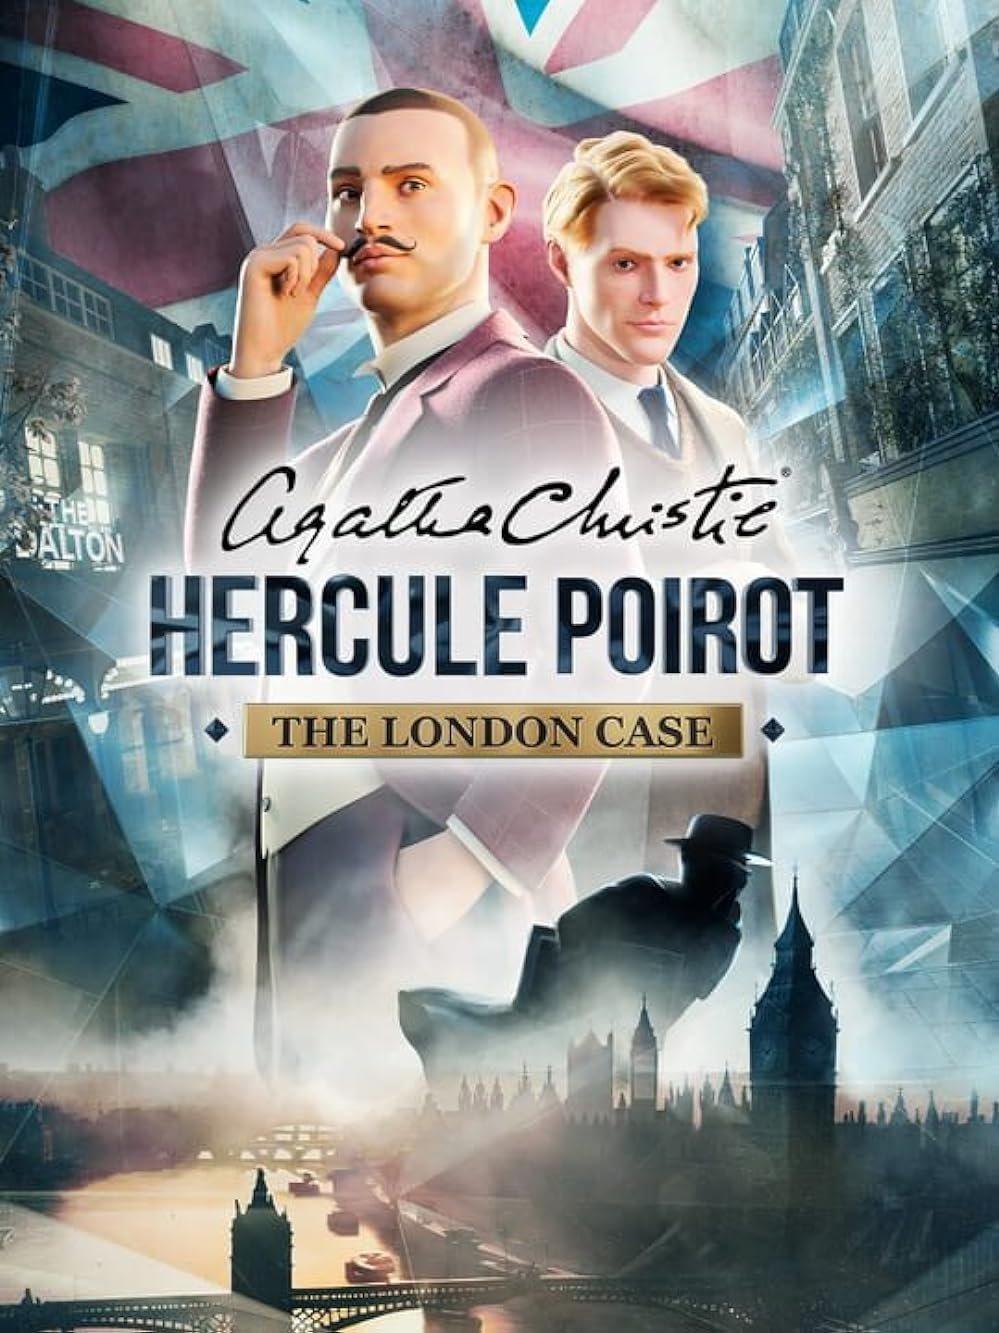 Agatha Christie - Hercule Poirot: The London Case - PC Steam